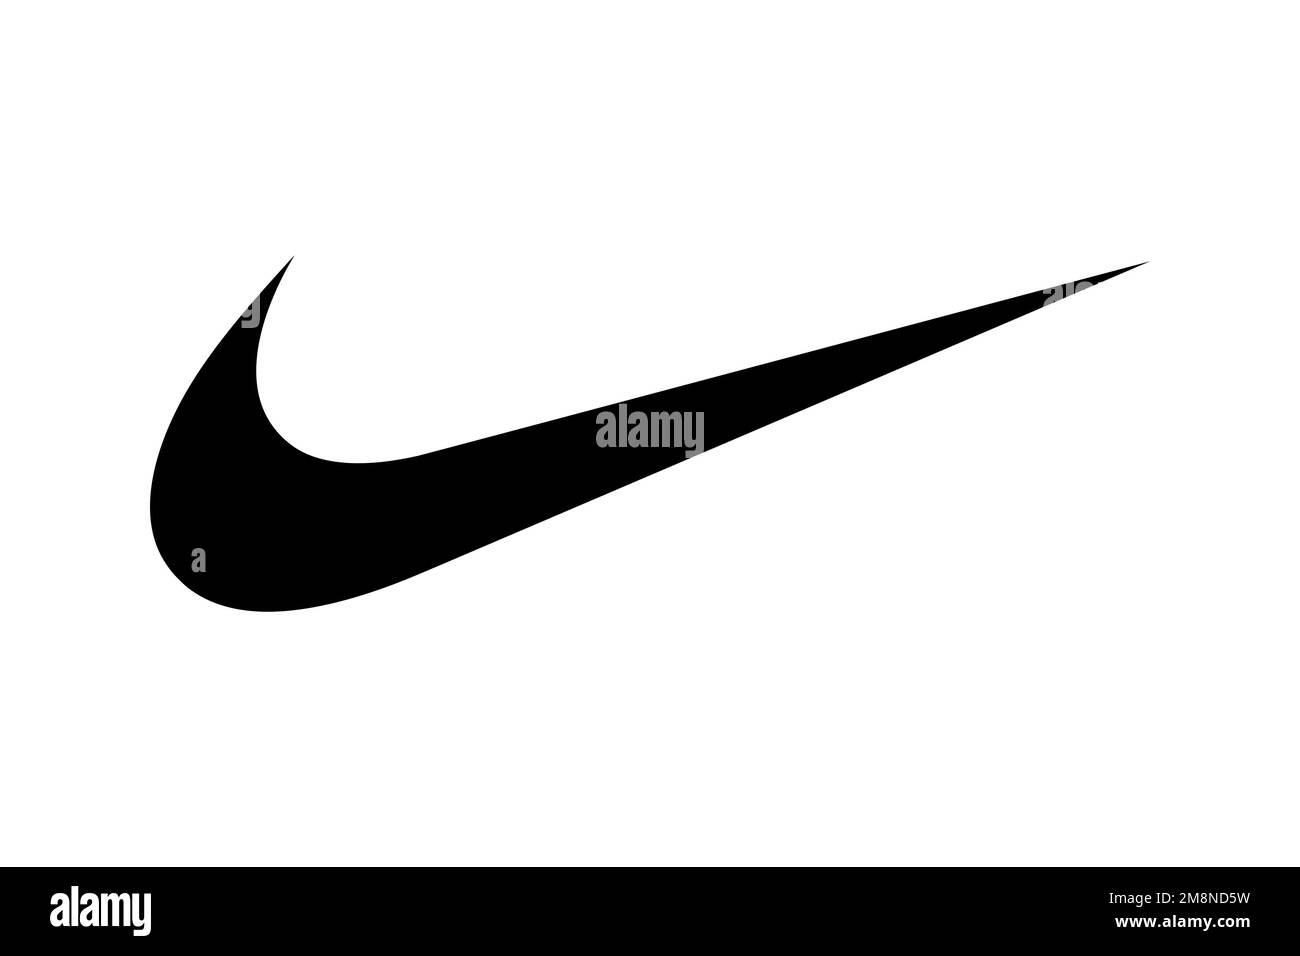 Nike trademark Imágenes de stock en blanco y - Alamy